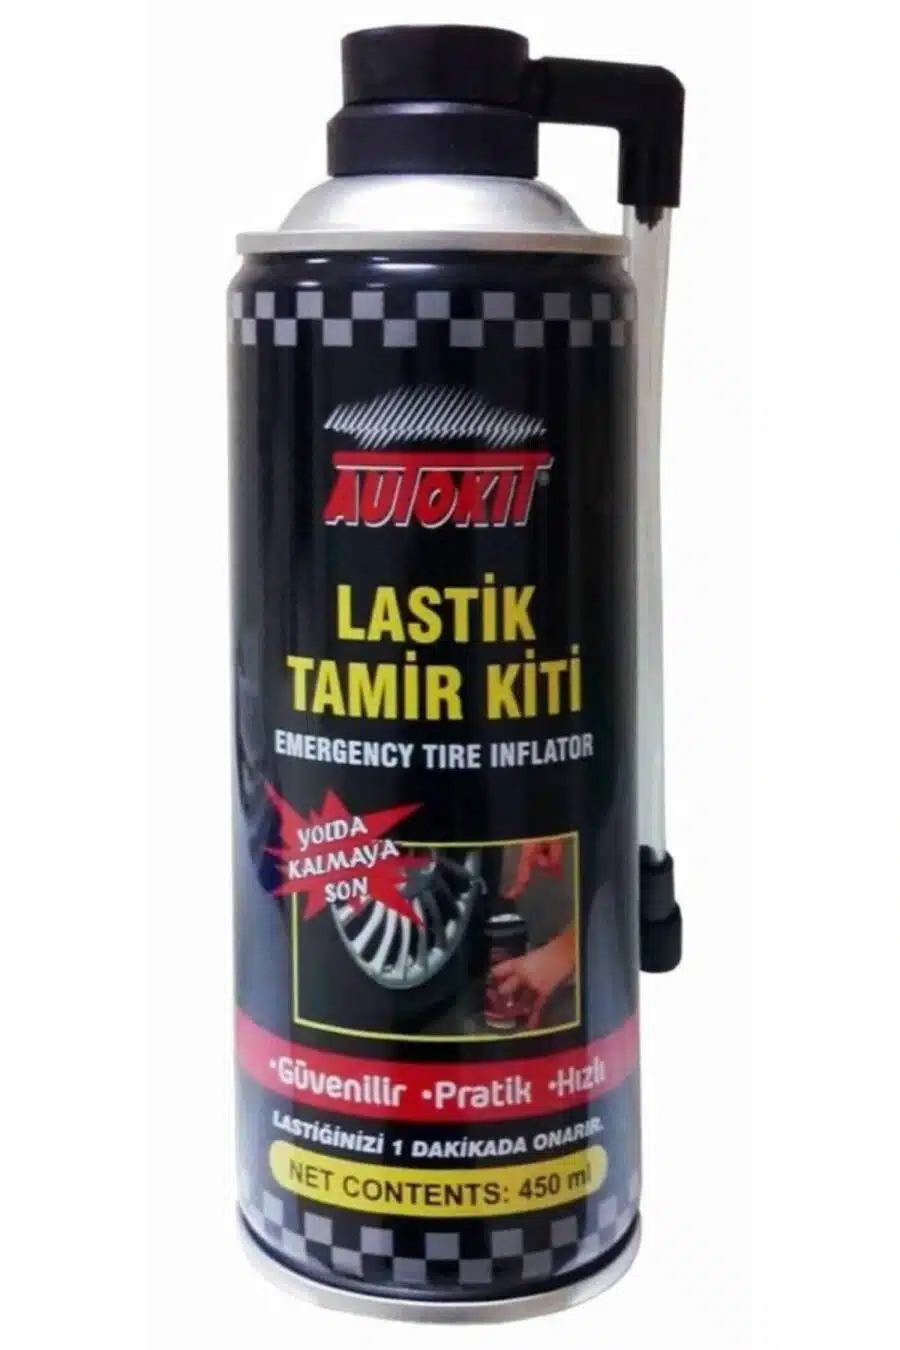 Autokit Lastik Tamir Kiti Bakım Tamir Spreyi 450 ml Koltuk Arkası Organizer budaolsun.com